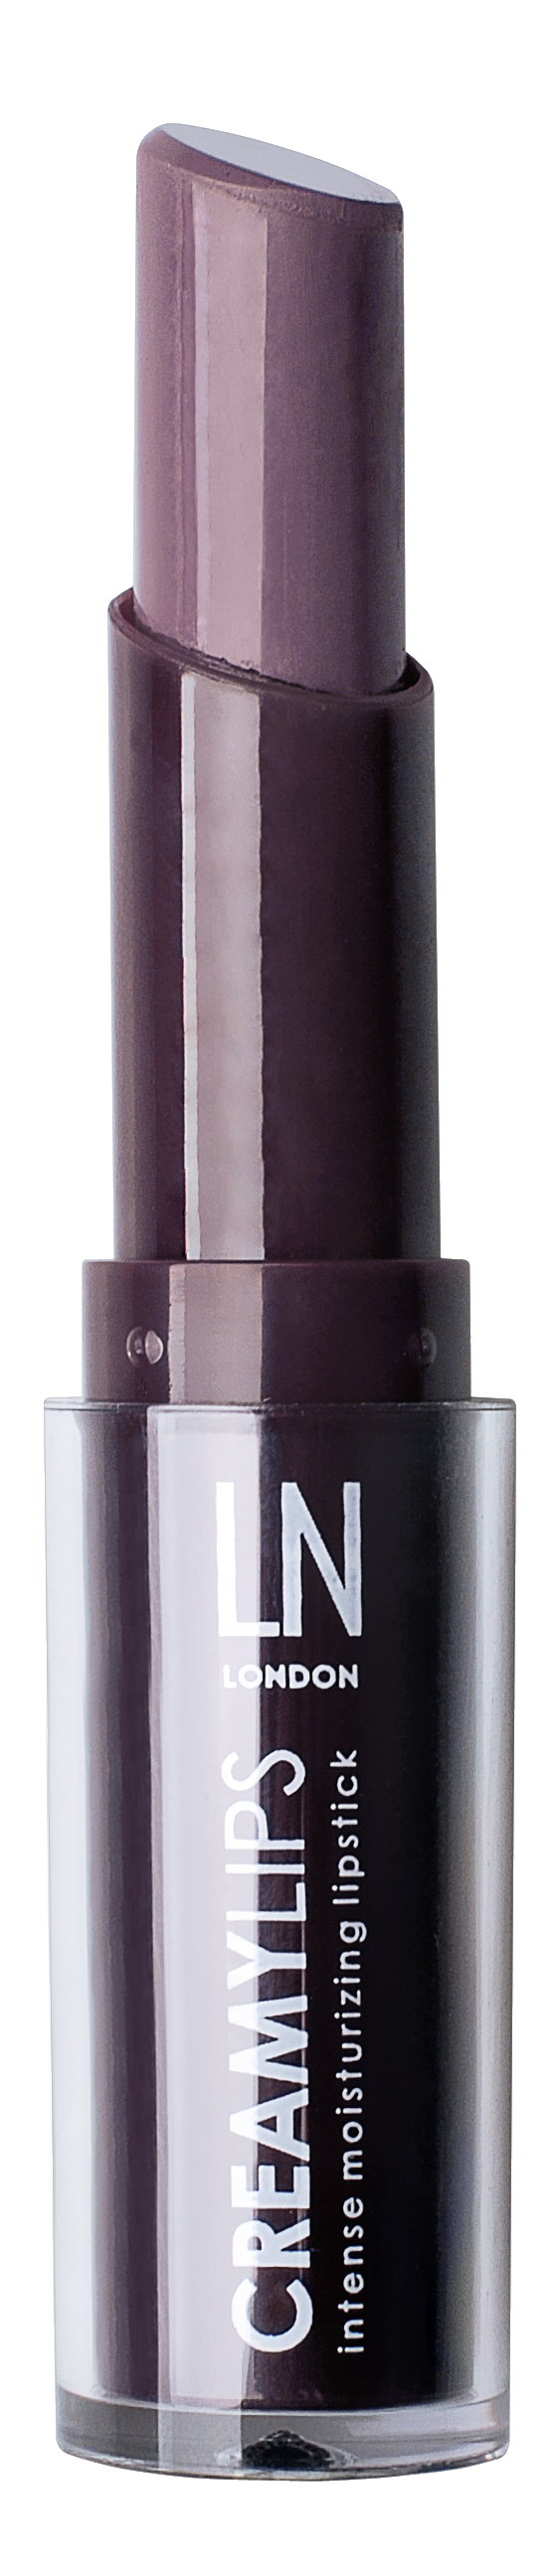 Кремова помада для губ LN Professional Creamy Lips, відтінок 5, 3,6 г - фото 1